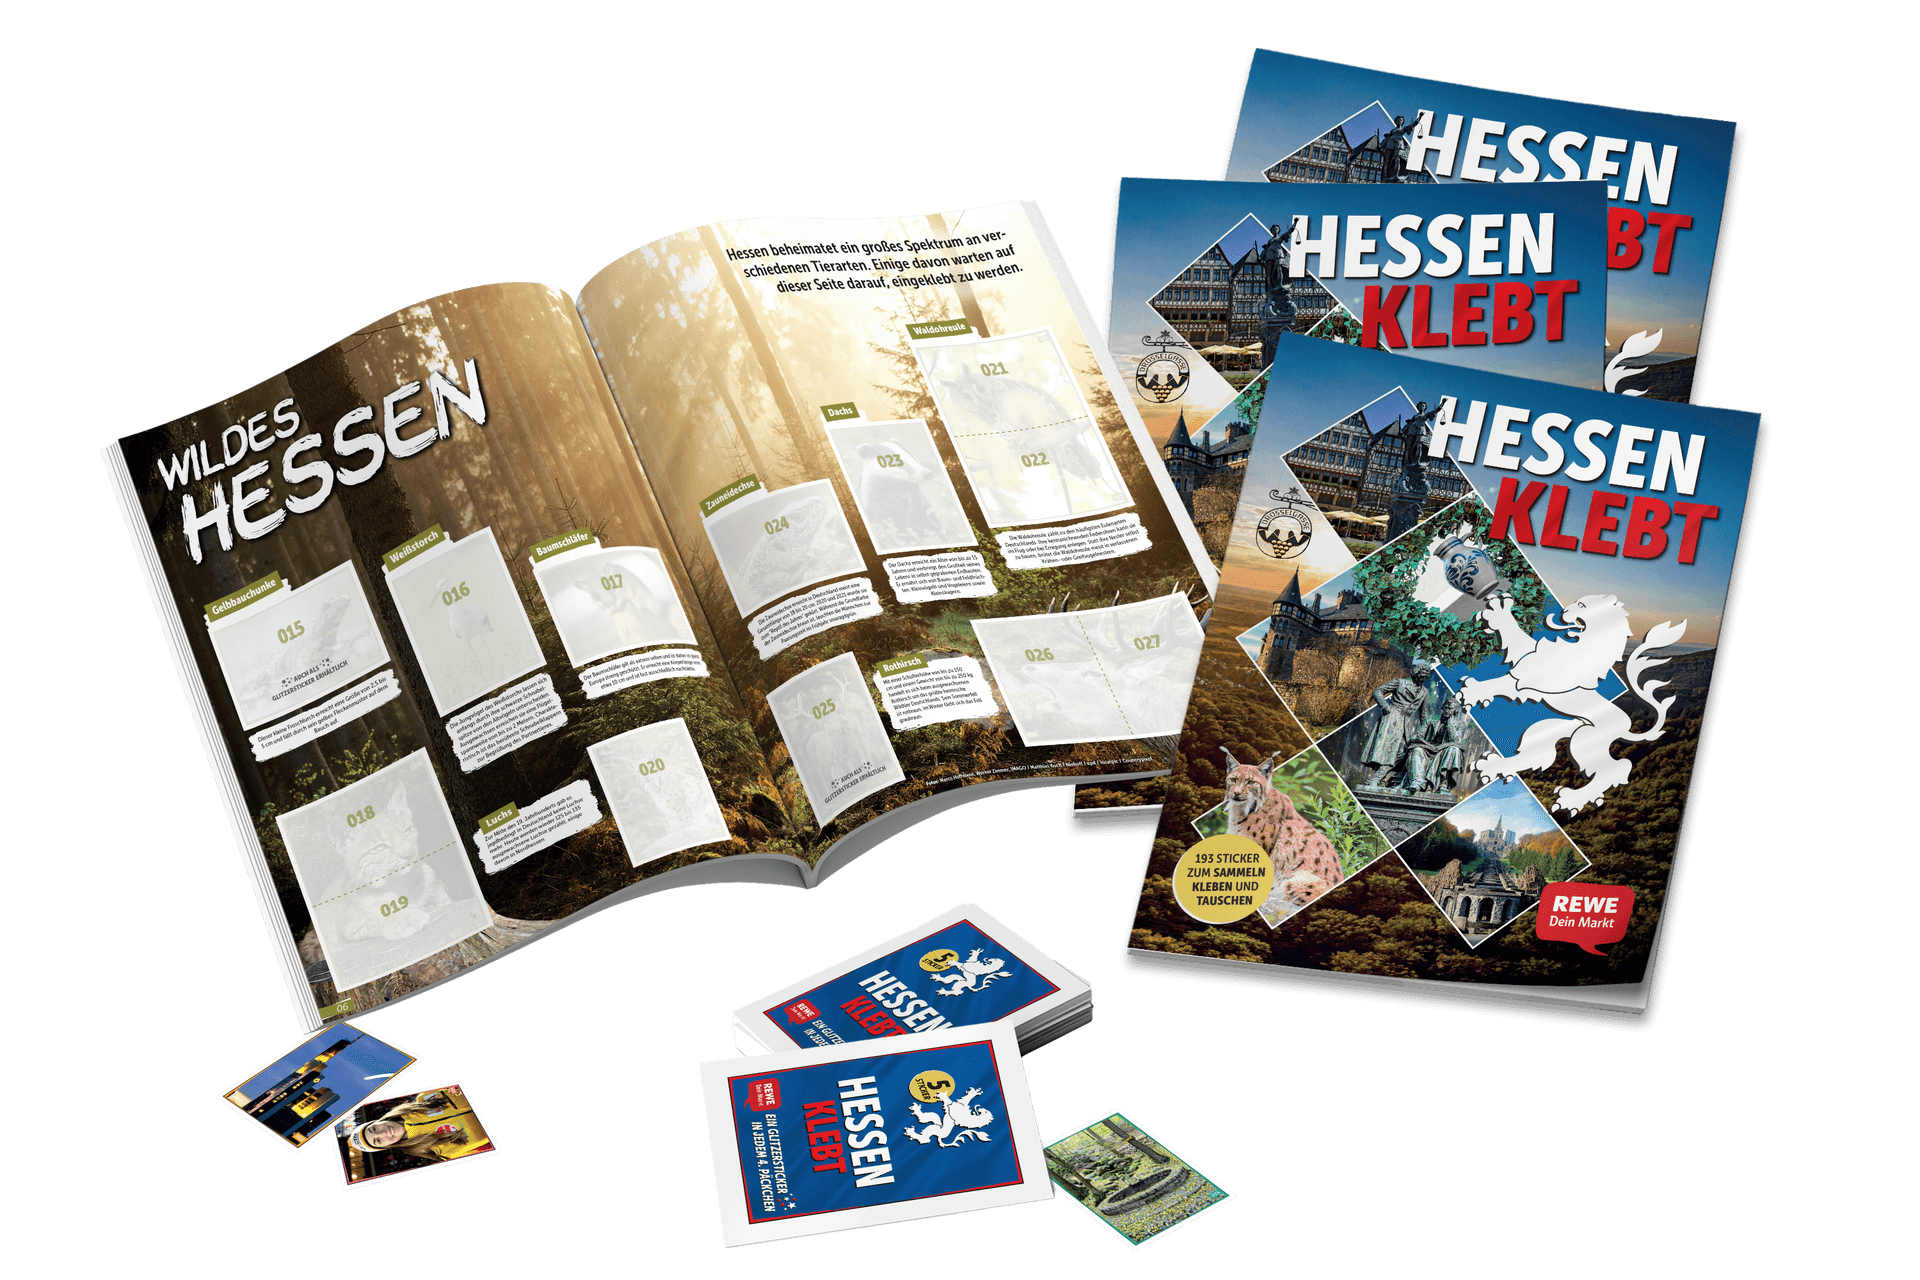 Sammelalbum und Sticker "Hessen klebt"